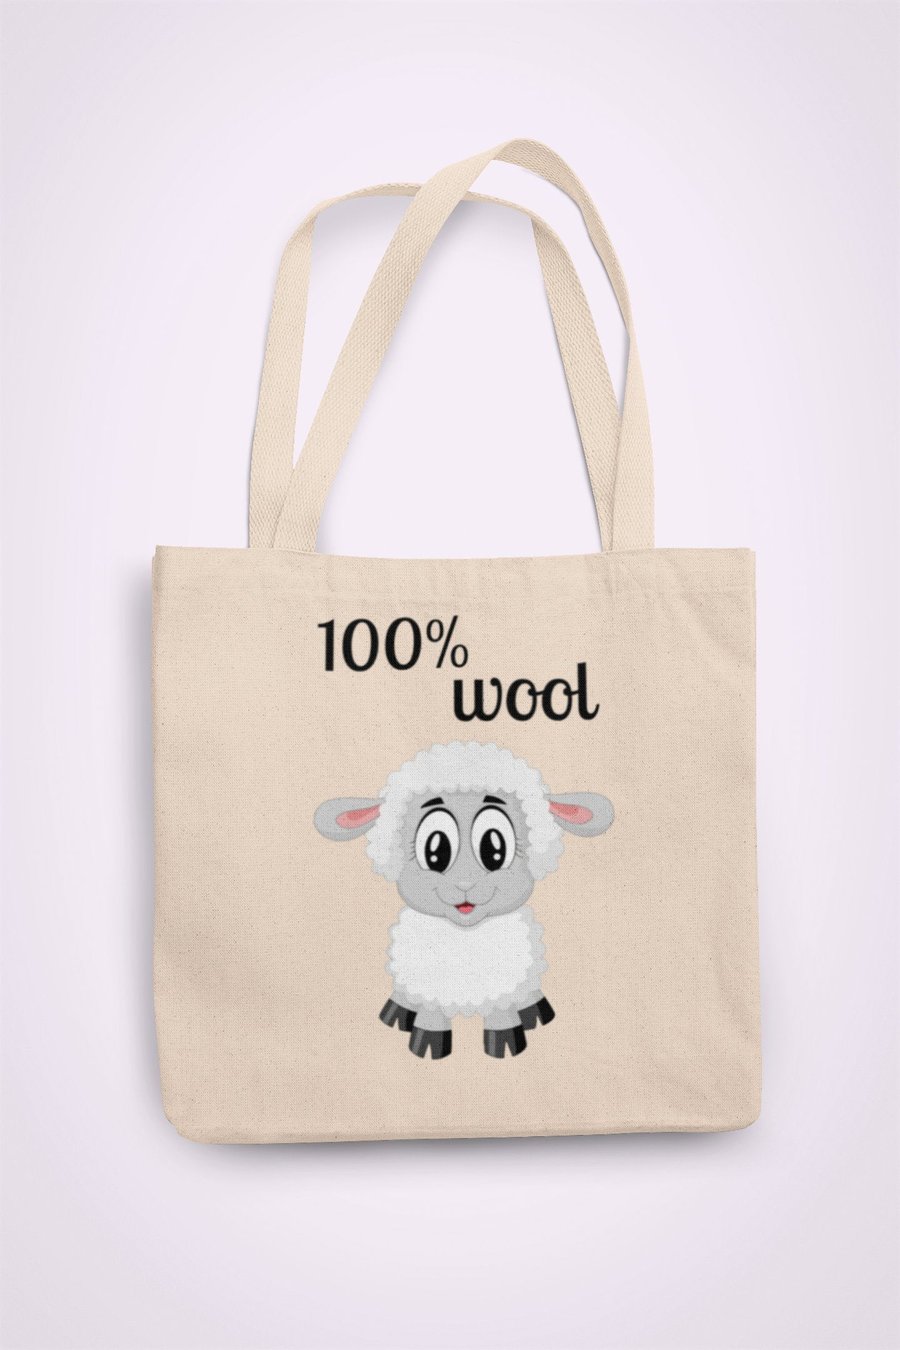 100% WOOL Tote Bag Reusable Cotton bag - funny birthday present gift 